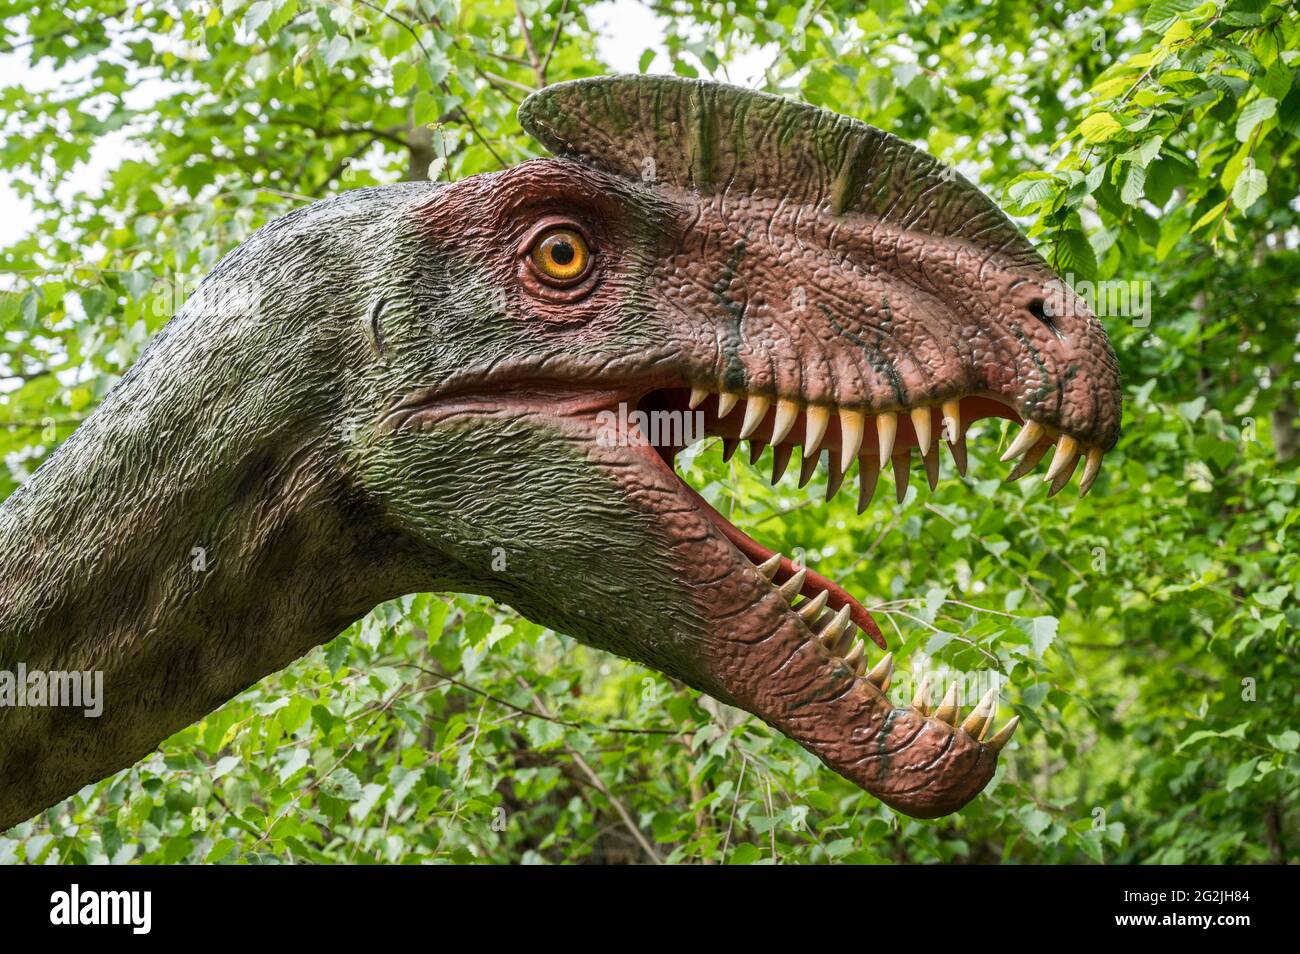 Dinosauro Dilofosauro come modello in Dinopark Münchehagen vicino Hannover. Visse circa 190 milioni di anni fa (Lower Jurassic) in Nord America, India e Cina, divenne circa 6 m di lunghezza e 0.5 t pesante. Foto Stock